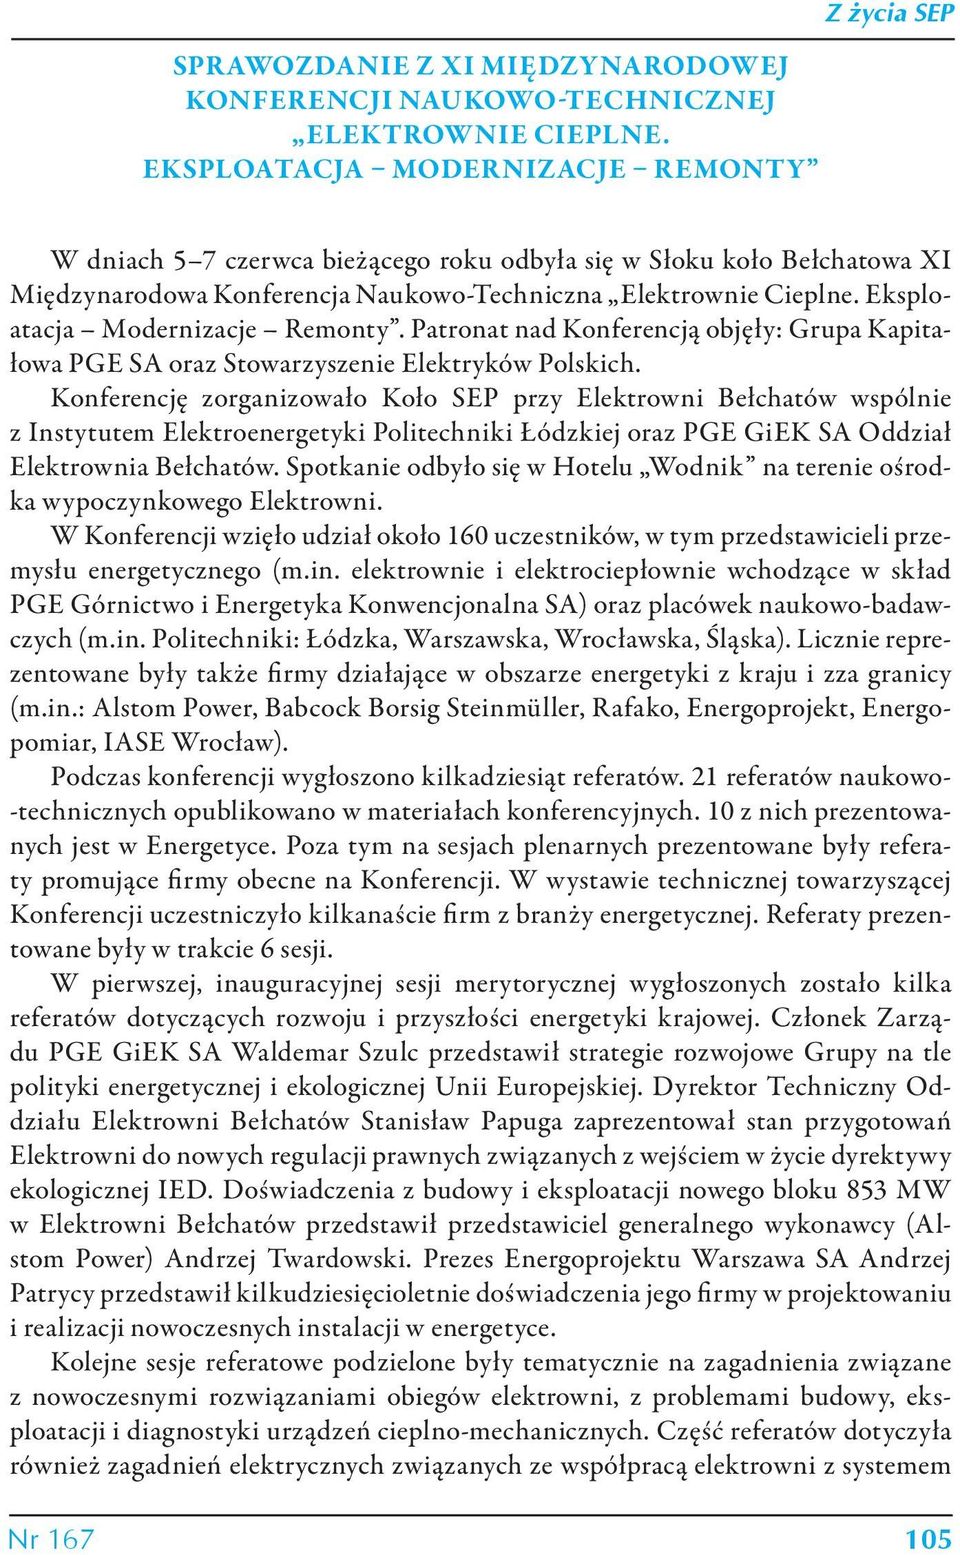 Eksploatacja Modernizacje Remonty. Patronat nad Konferencją objęły: Grupa Kapitałowa PGE SA oraz Stowarzyszenie Elektryków Polskich.